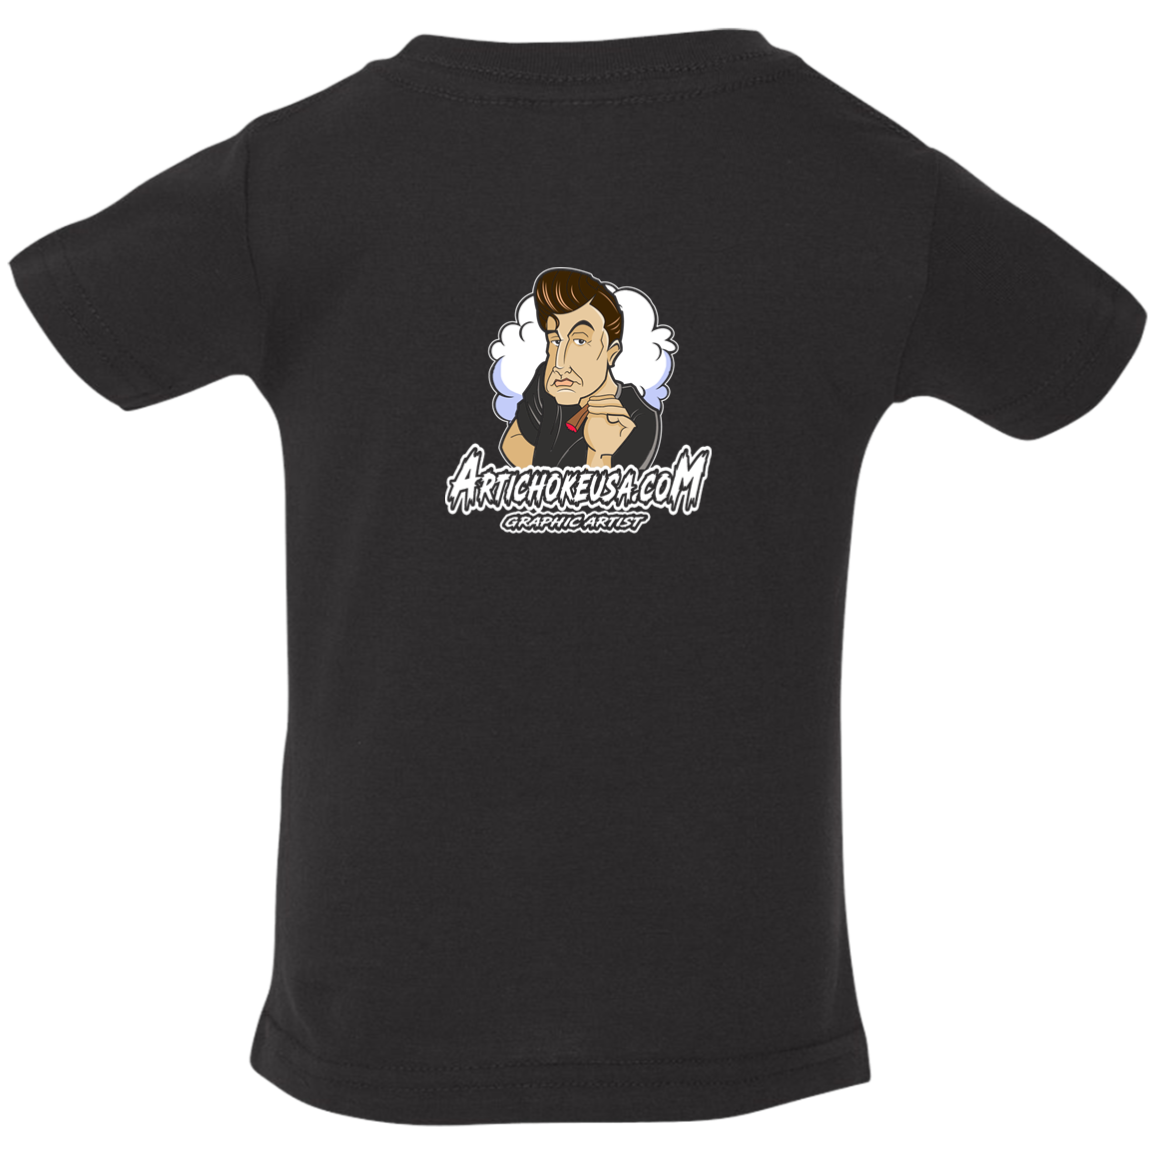 ArtichokeUSA Custom Design. Innovation. Elon Musk Parody Fan Art. Infant Jersey T-Shirt